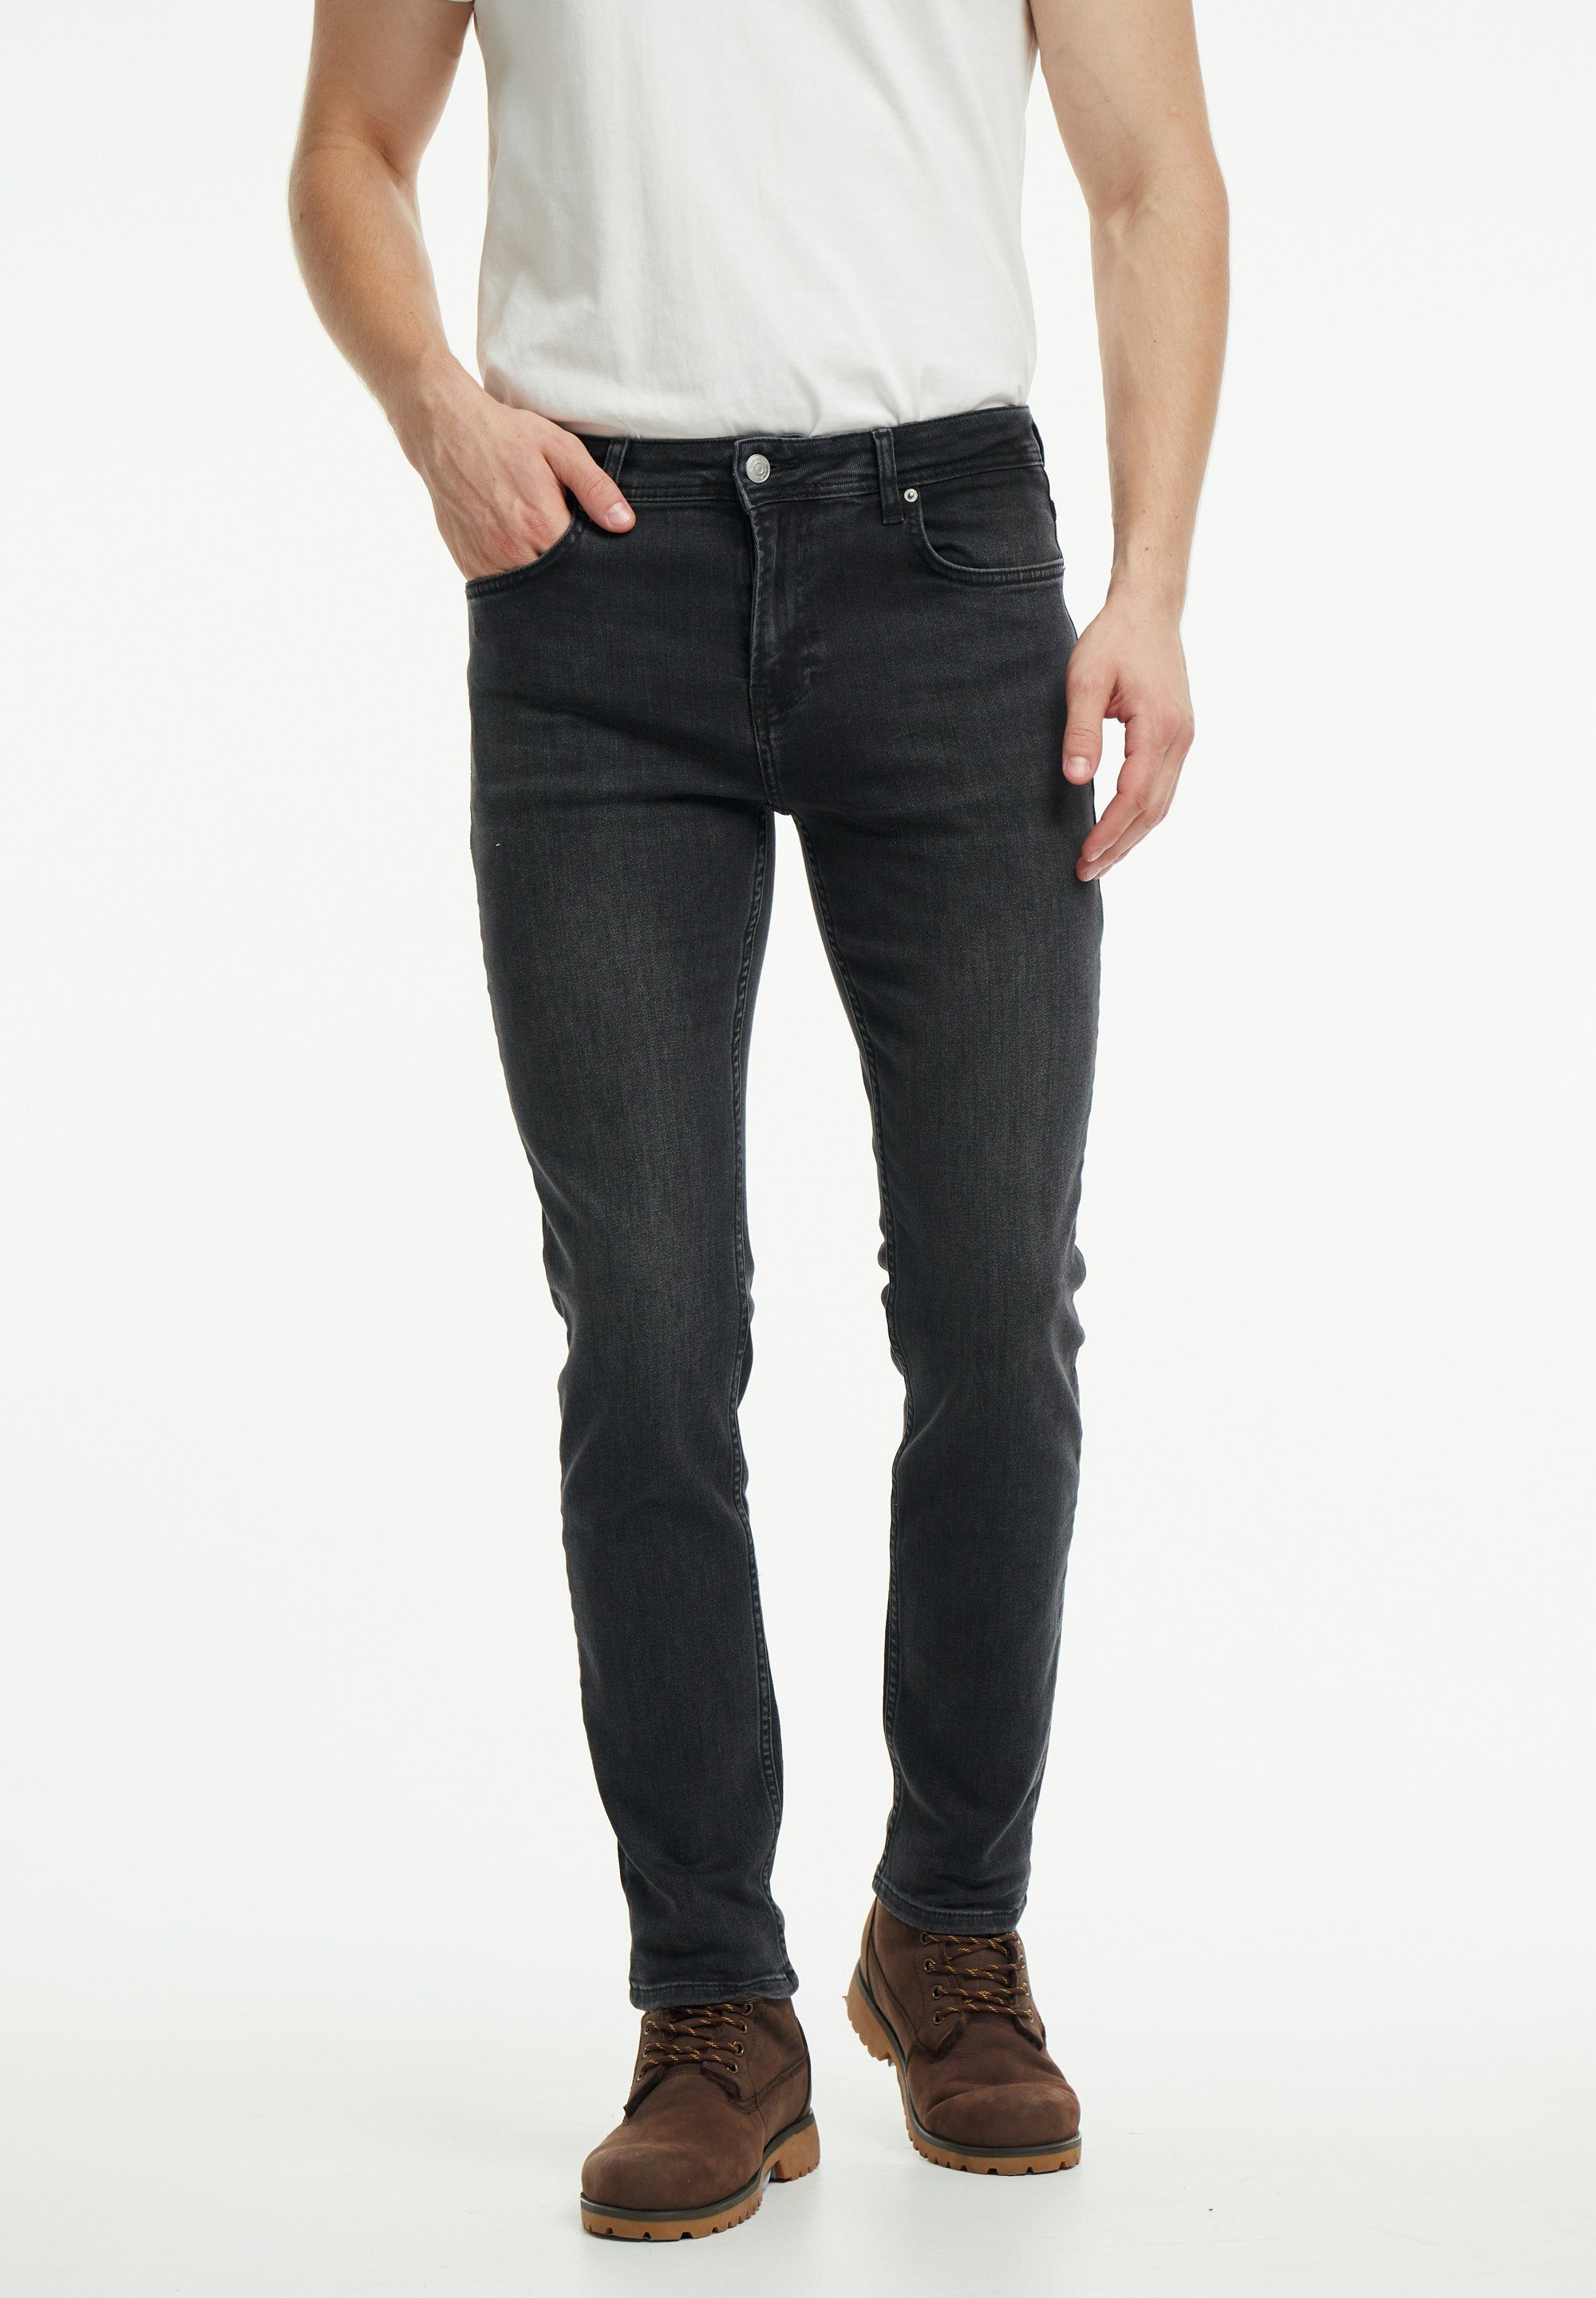 wem Tapered-fit-Jeans Oscar Tapered Fit – Mittlere Bundhöhe: Oben breiter, unten schmaler anthrazit